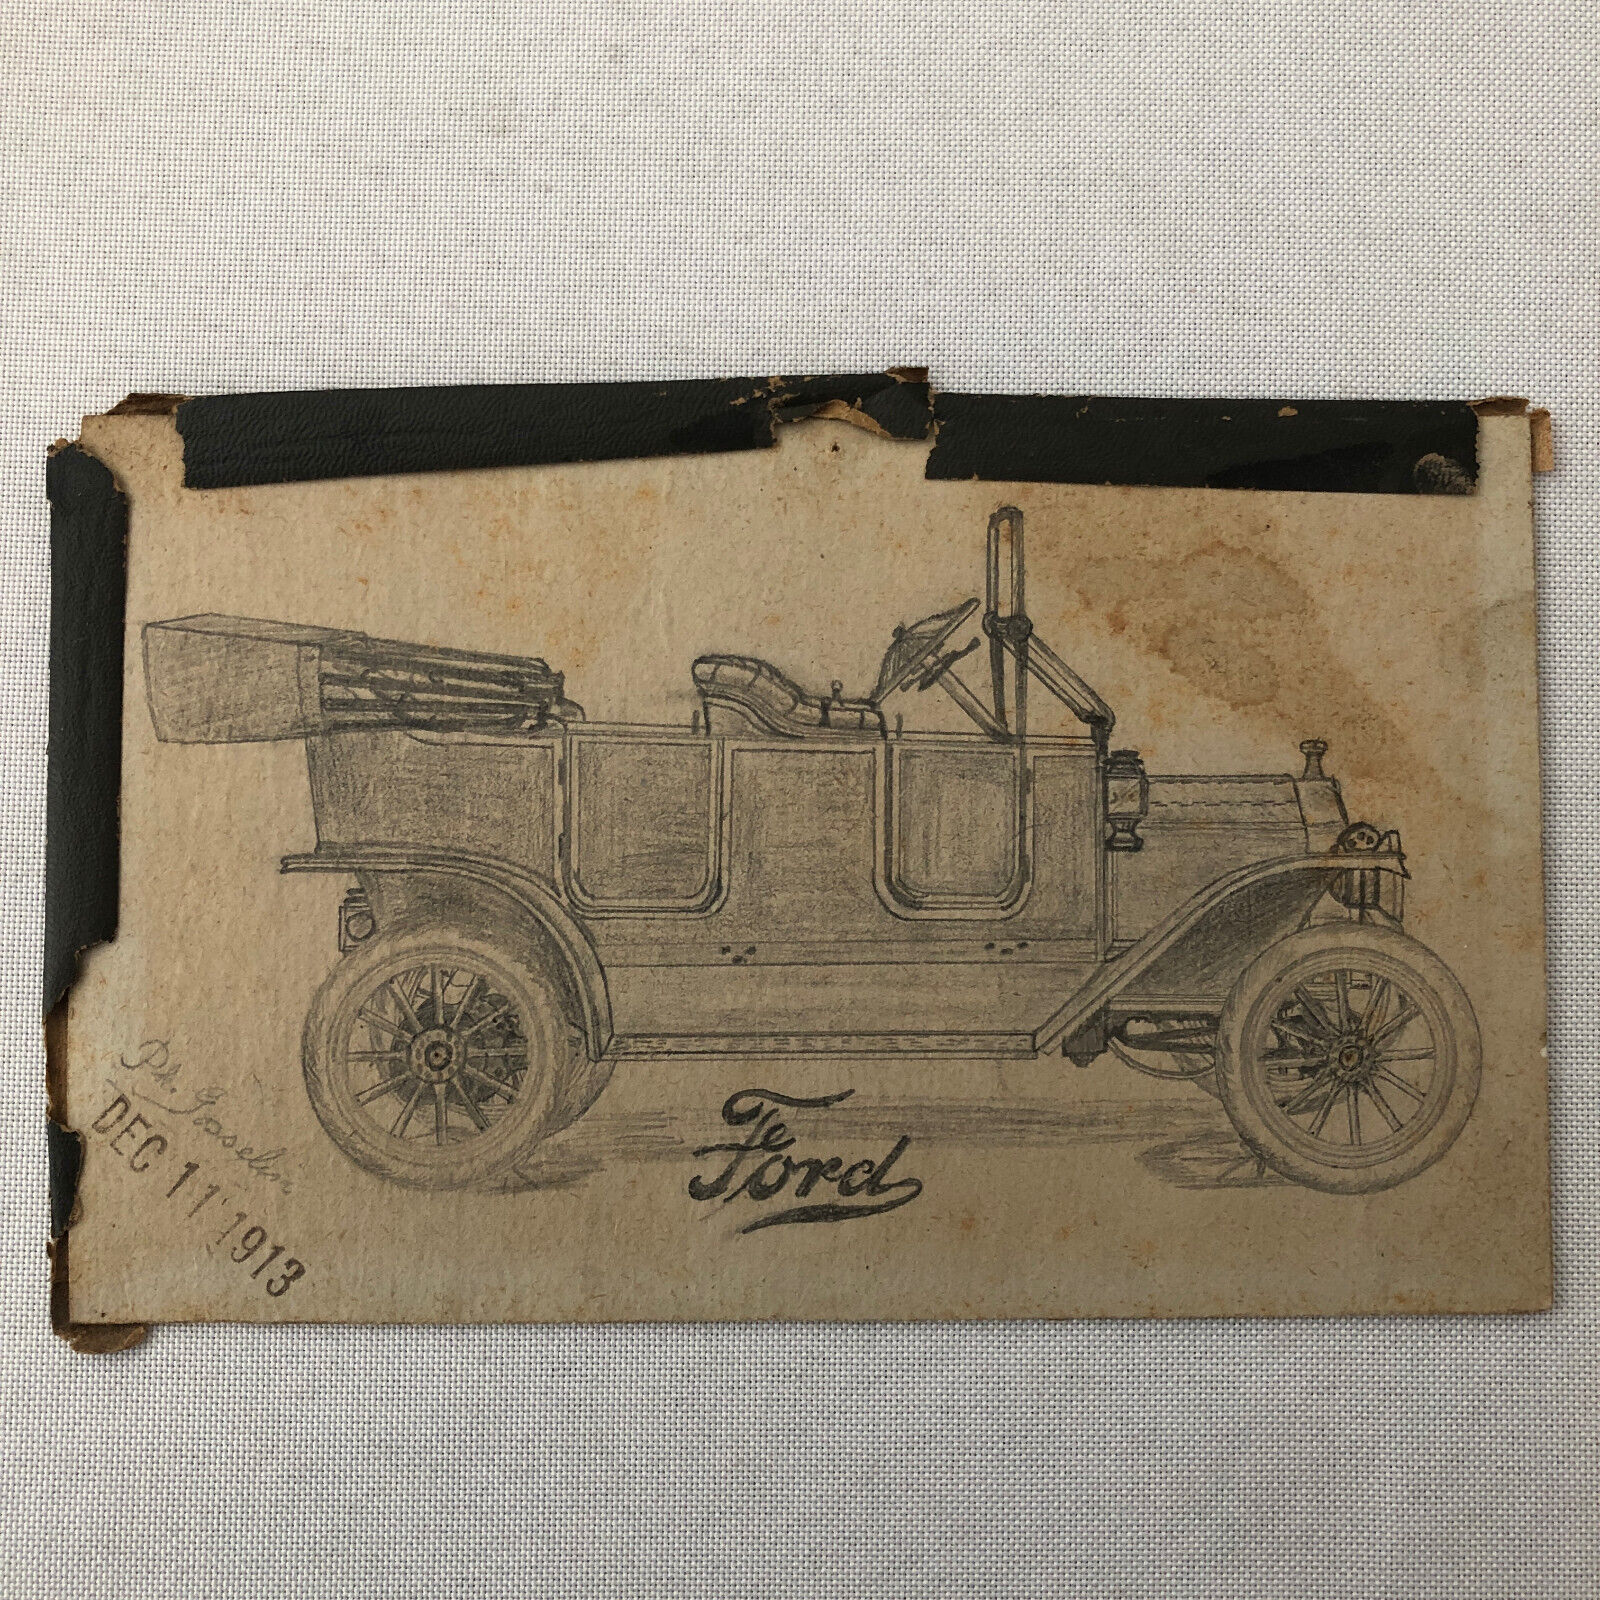 1913 Ford Model Car Child Art Illustration Drawing Sketch Vintage